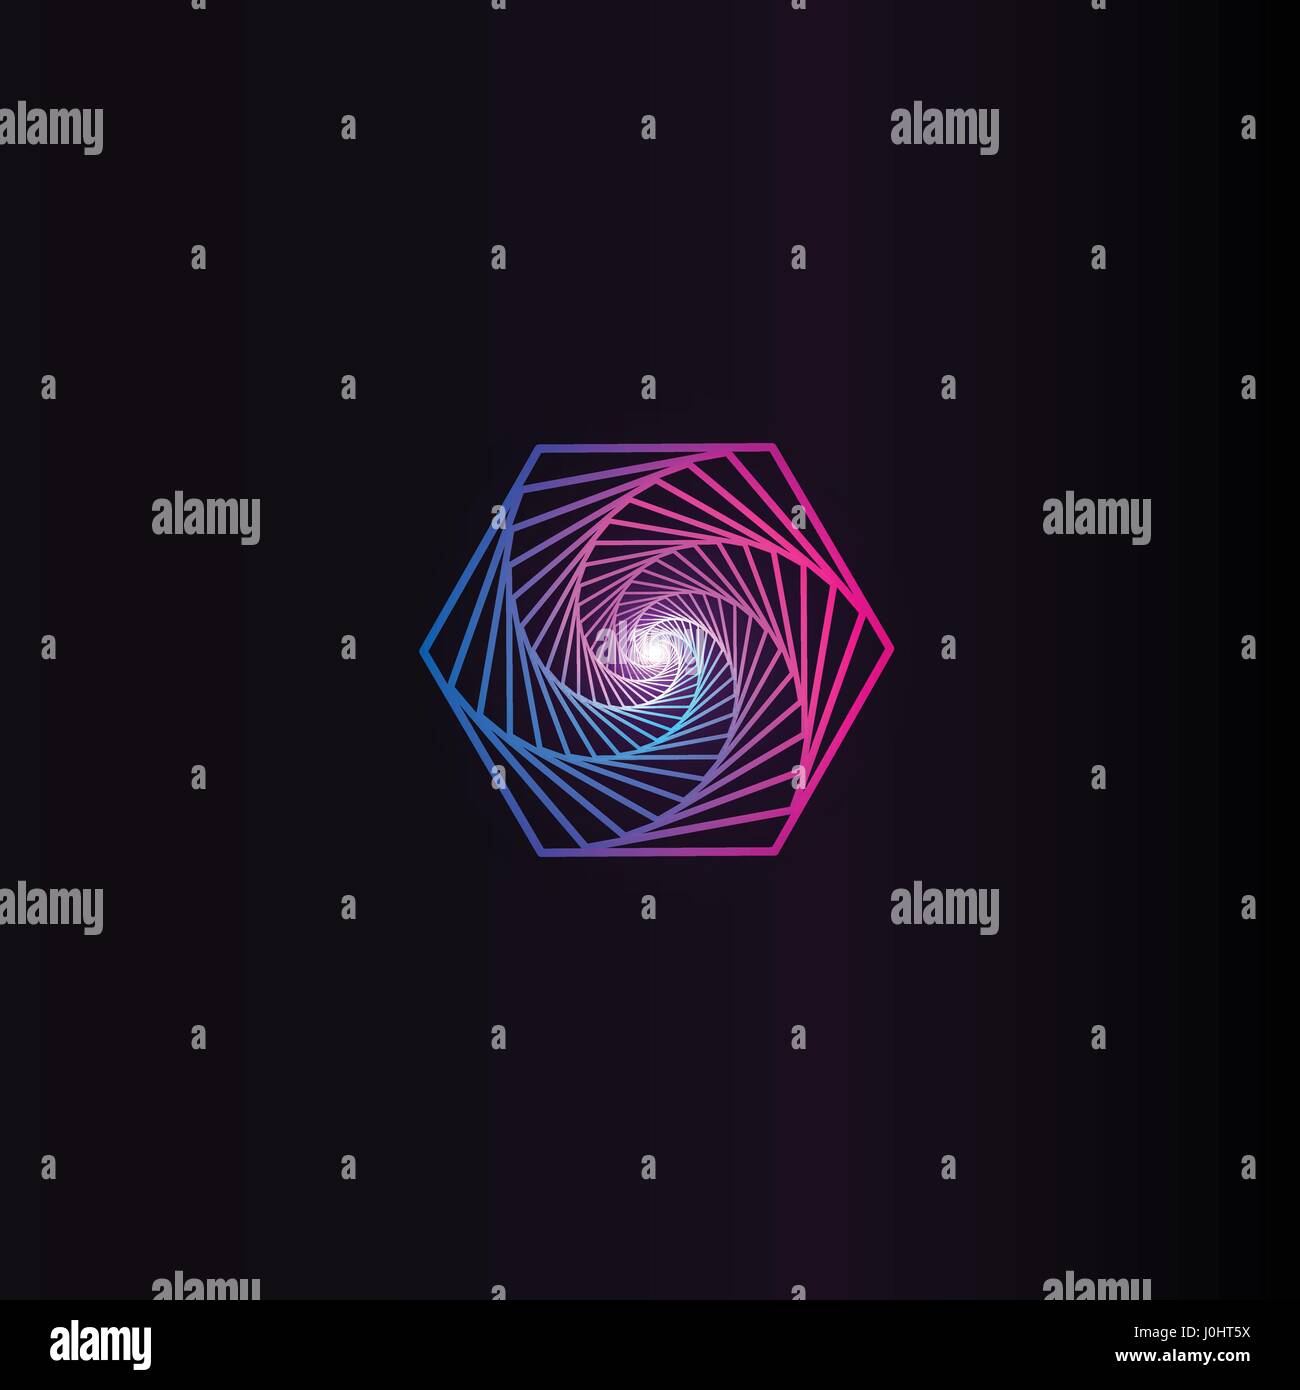 Isolierte abstrakt bunt Runde Form Logo, Raum Element, Wirbel-Logo, Planeten-Symbol auf schwarzem Hintergrund Vektor-illustration Stock Vektor